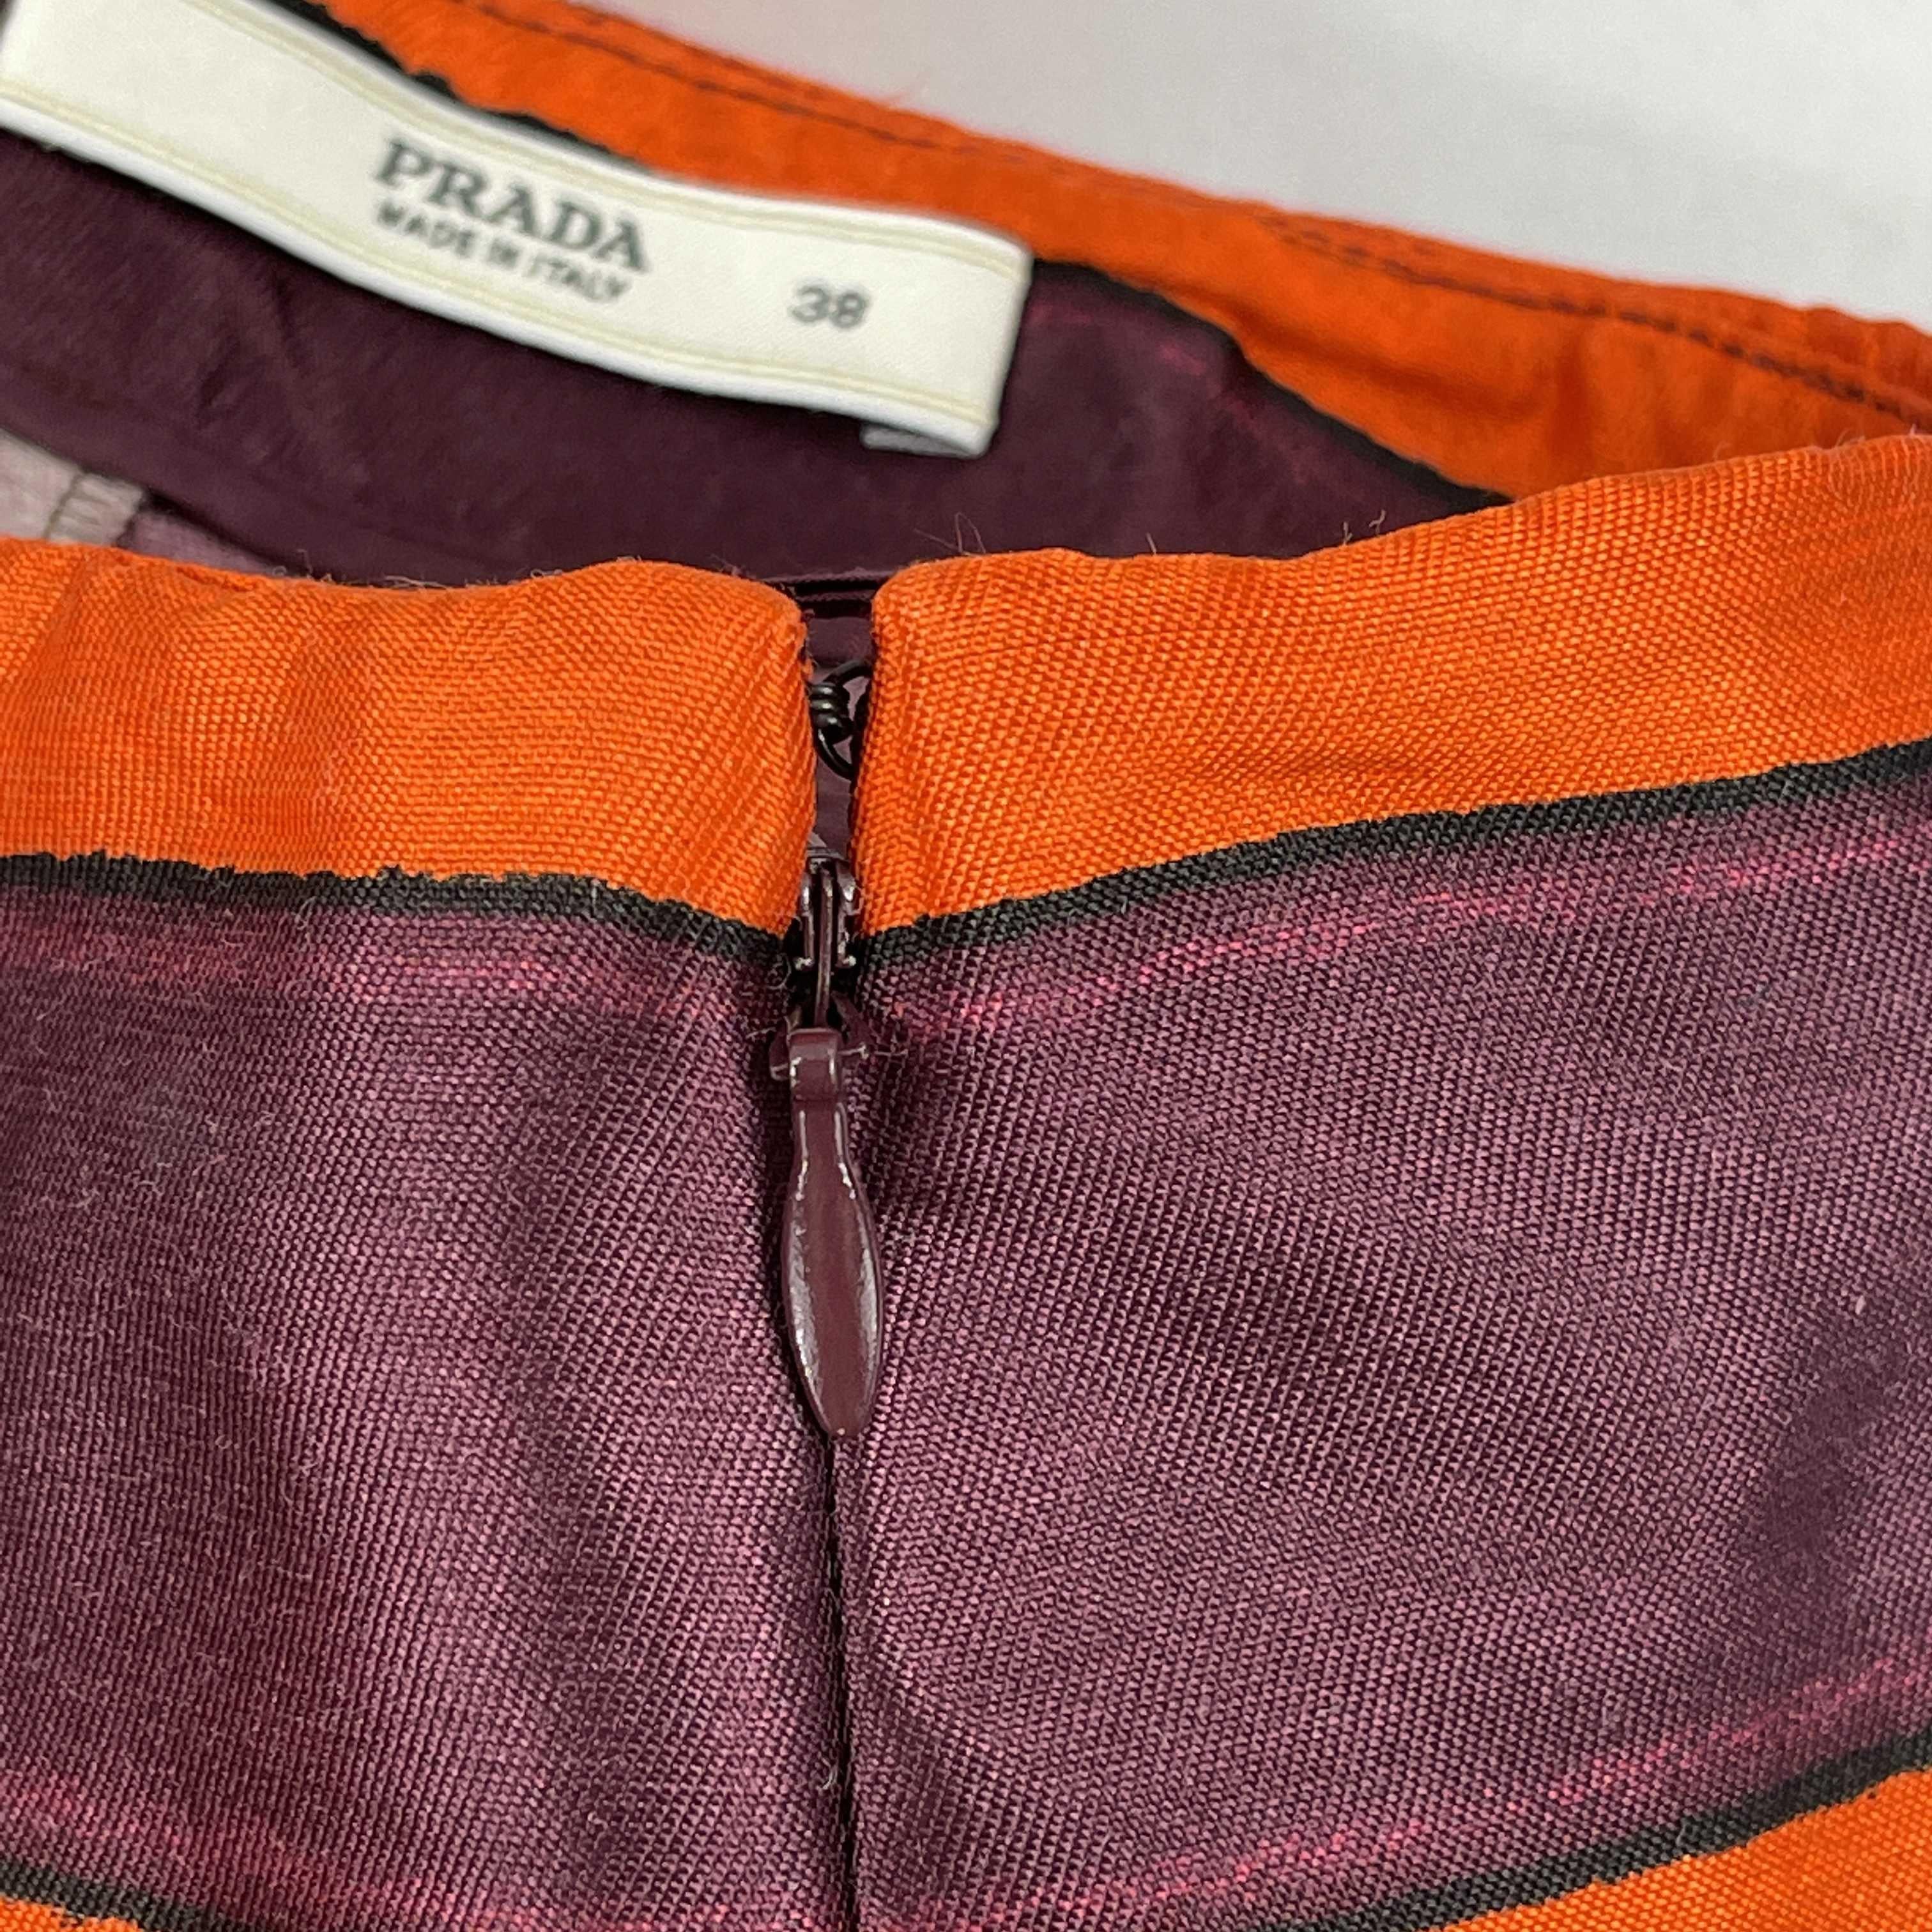 PRADA Pleated High-Waisted Striped Mini Skirt Purple, Orange, Black 38 US 2 2